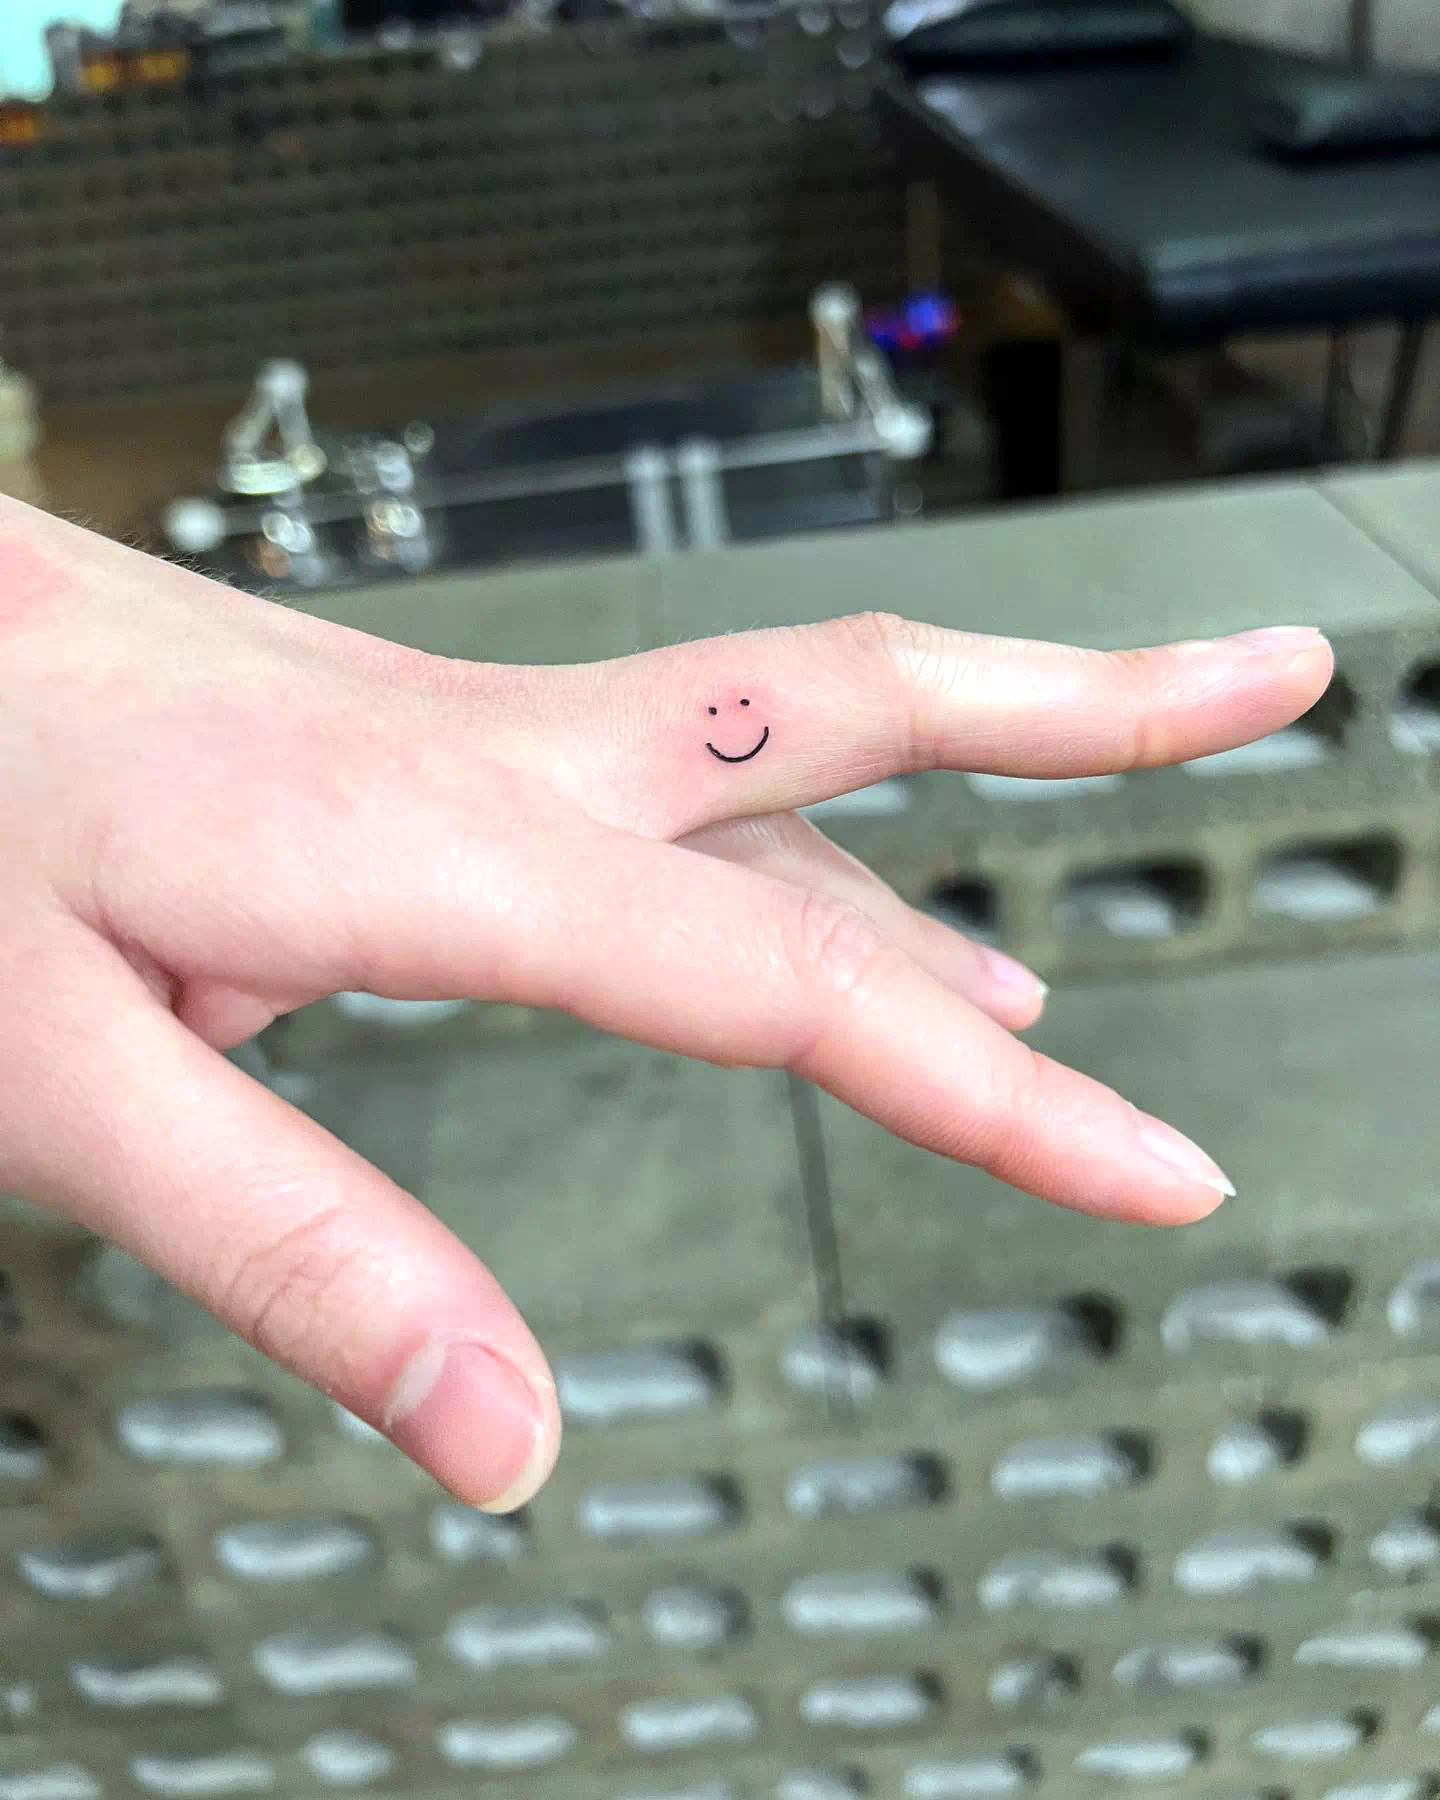 Smile Tattoo On Finger